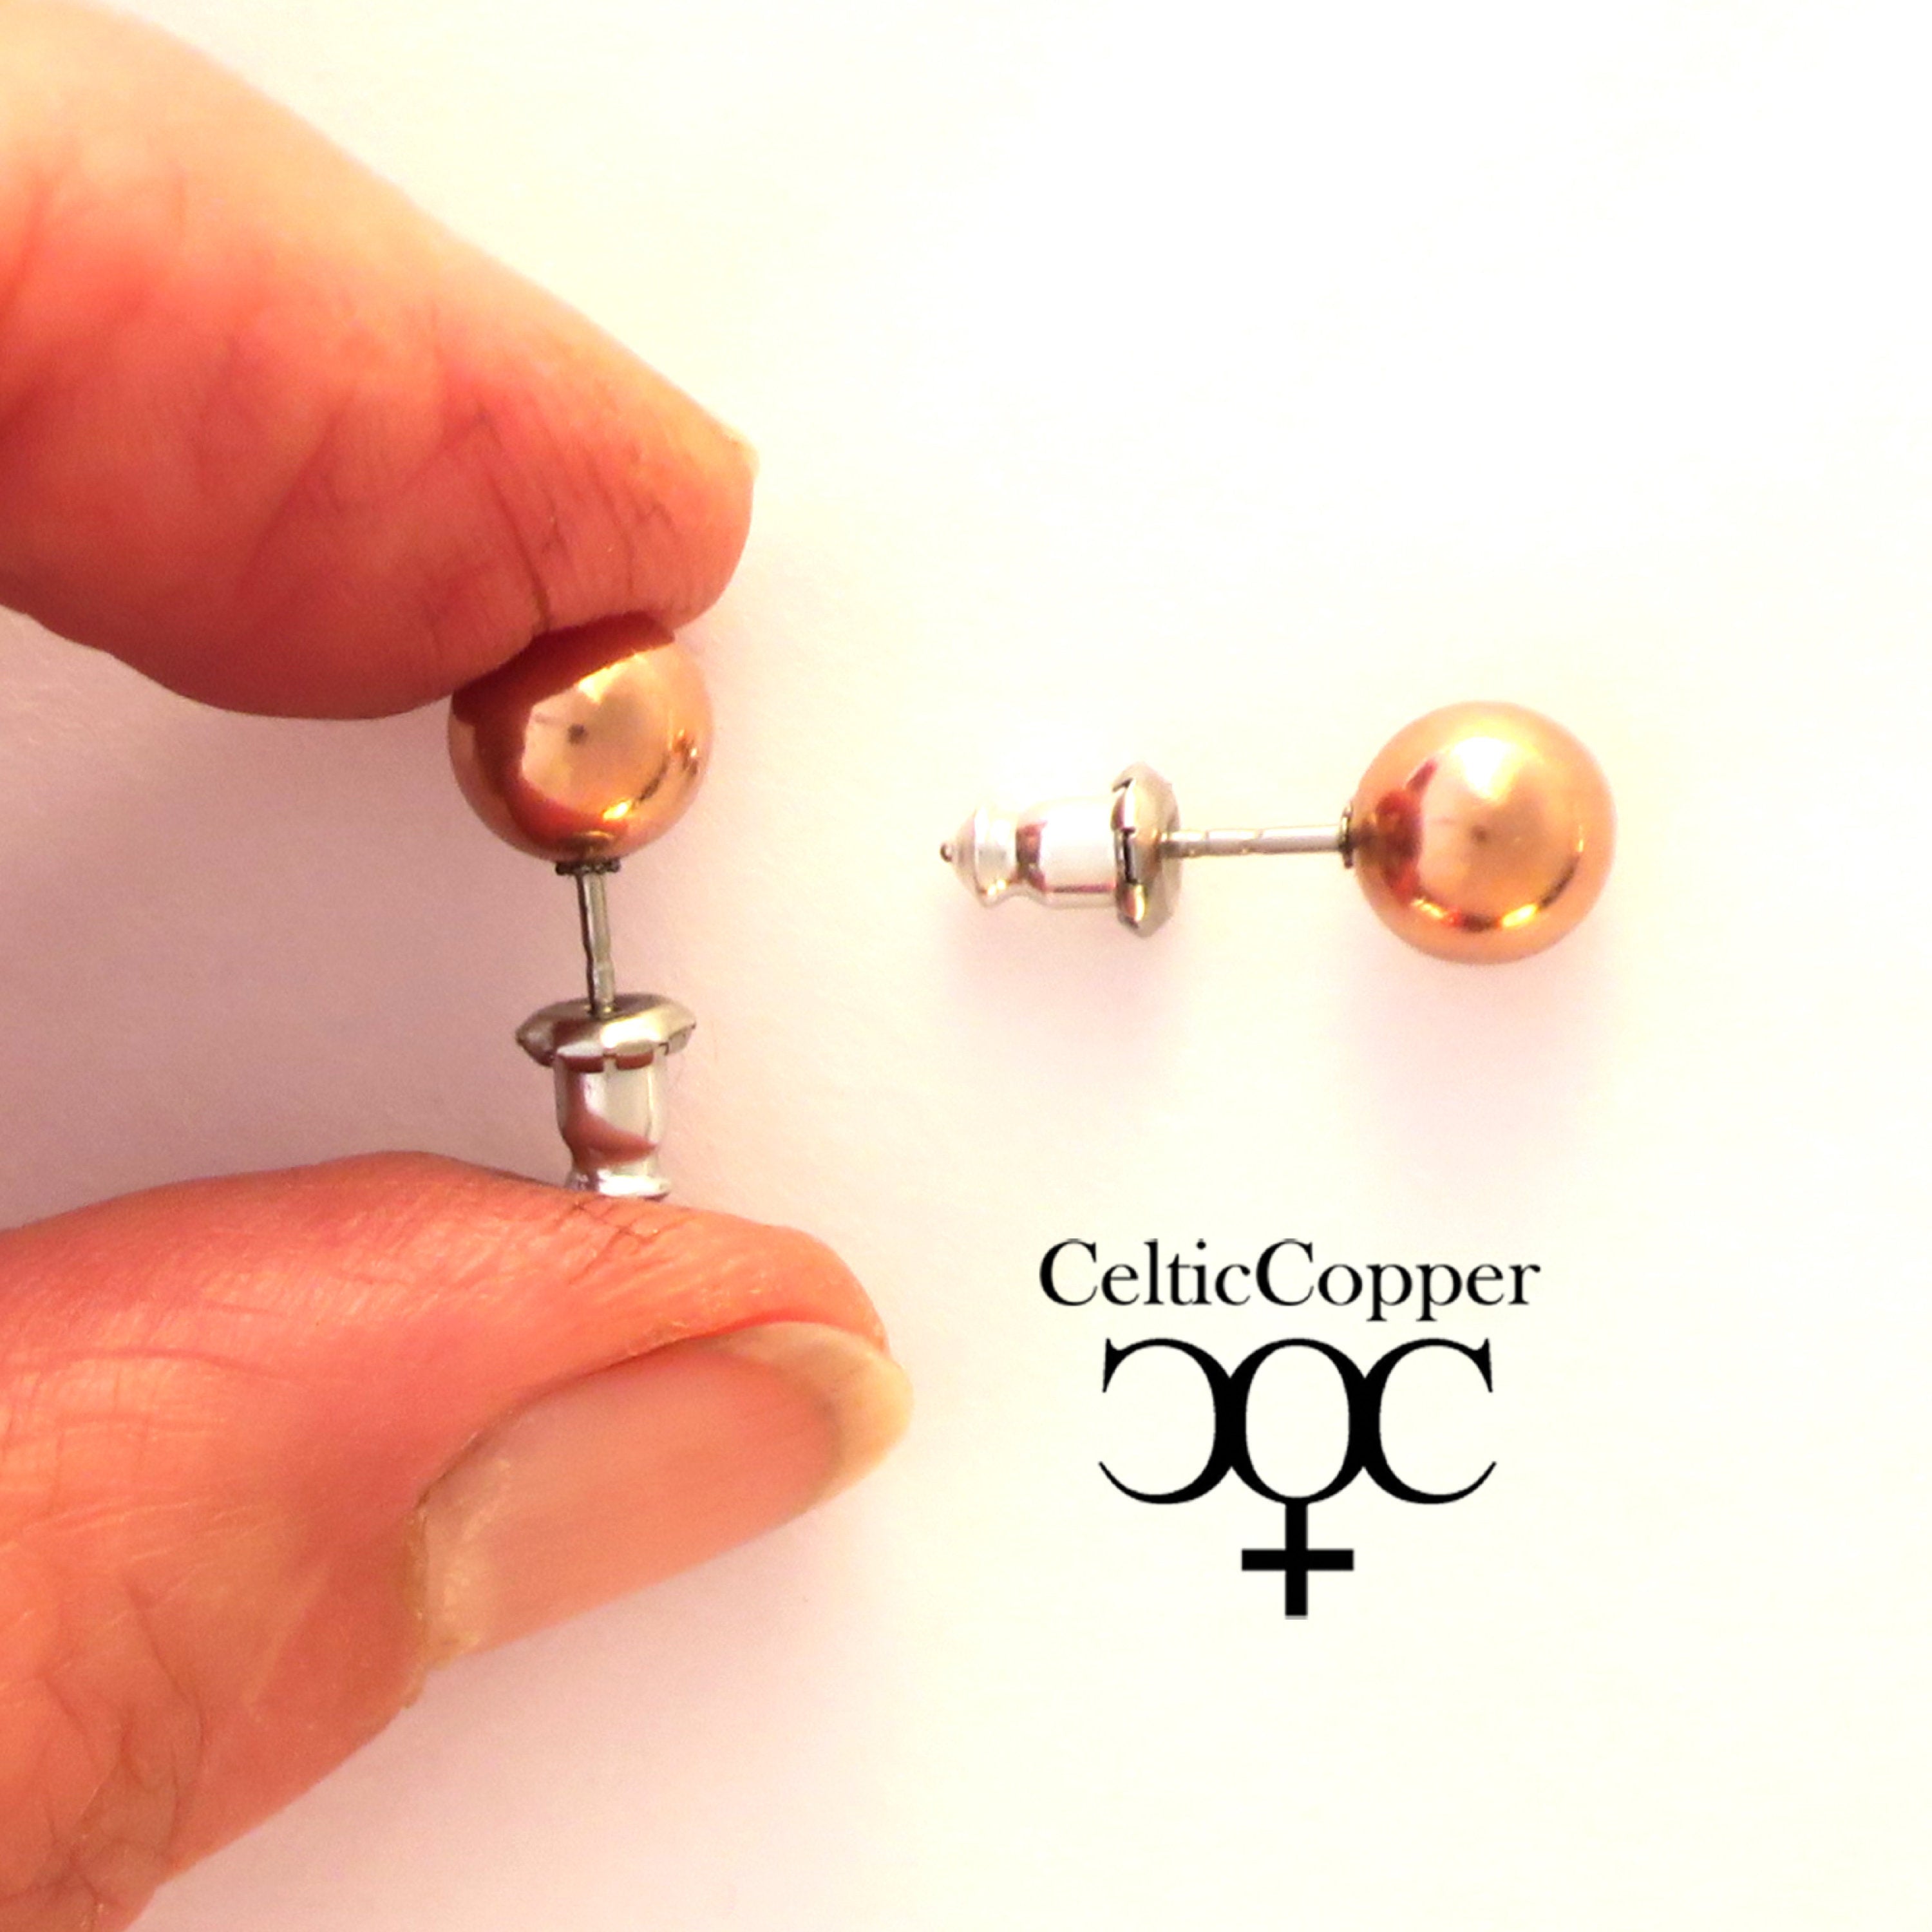 Solid Copper Necklace Chain Celtic Copper Fine Scroll Chain Necklace NC61  Celtic Necklace Chain Solid Copper Necklace 18 Inch Chain